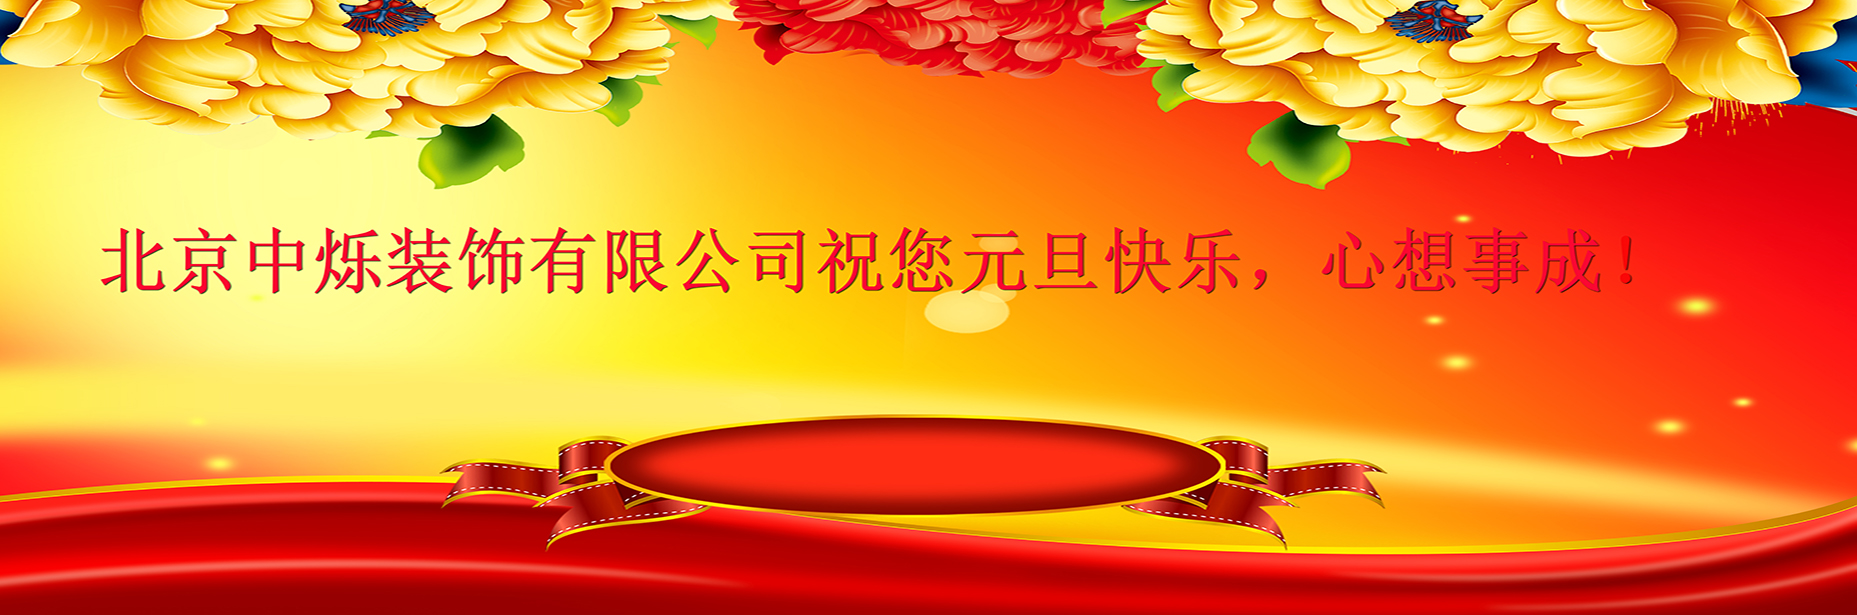 北京中烁装饰有限公司祝客户朋友们元旦快乐！